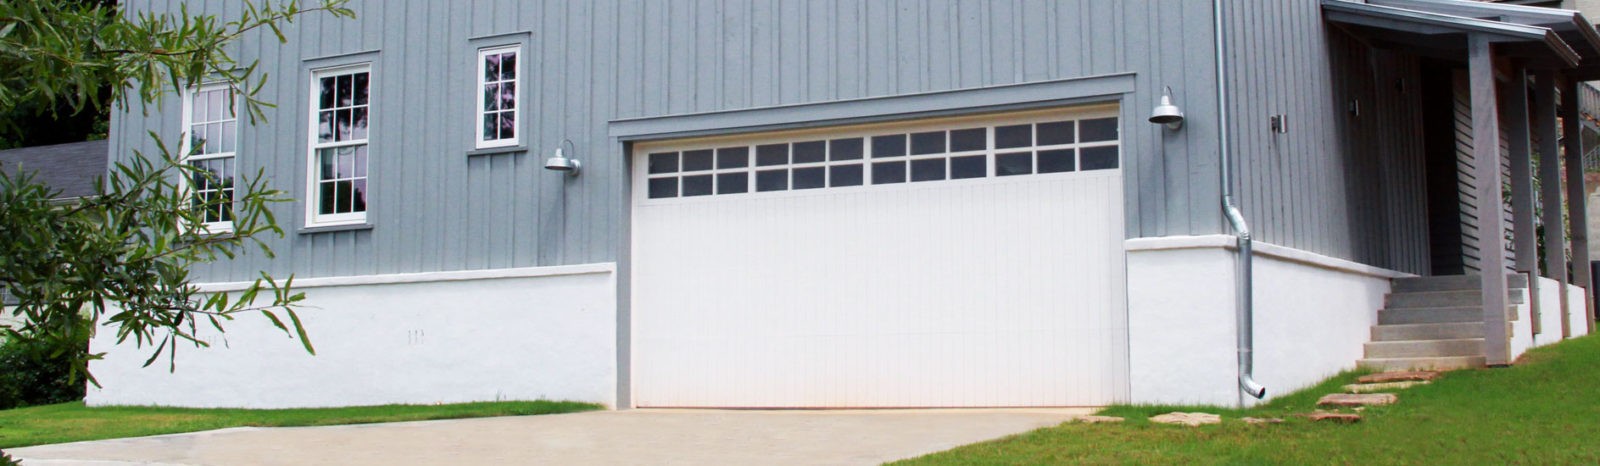 wood garage door with flush panels